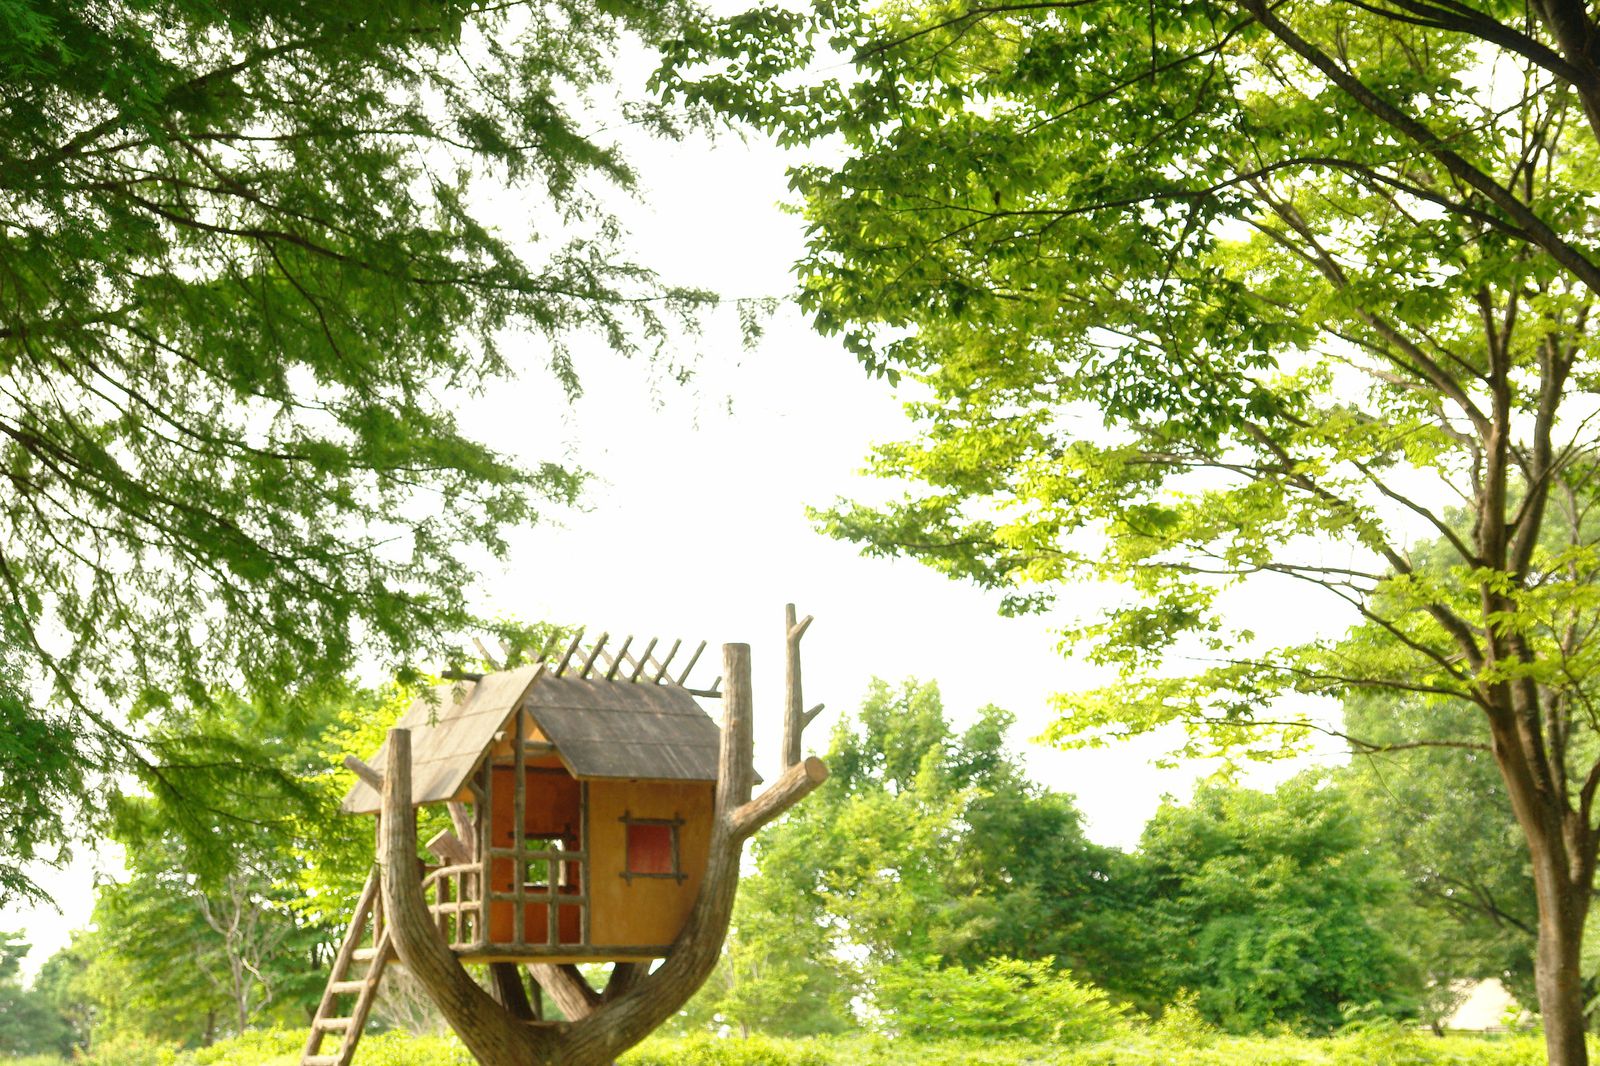 いつか登ってみたい憧れの場所へ 日本全国の素敵な ツリーハウス 7選 Retrip リトリップ